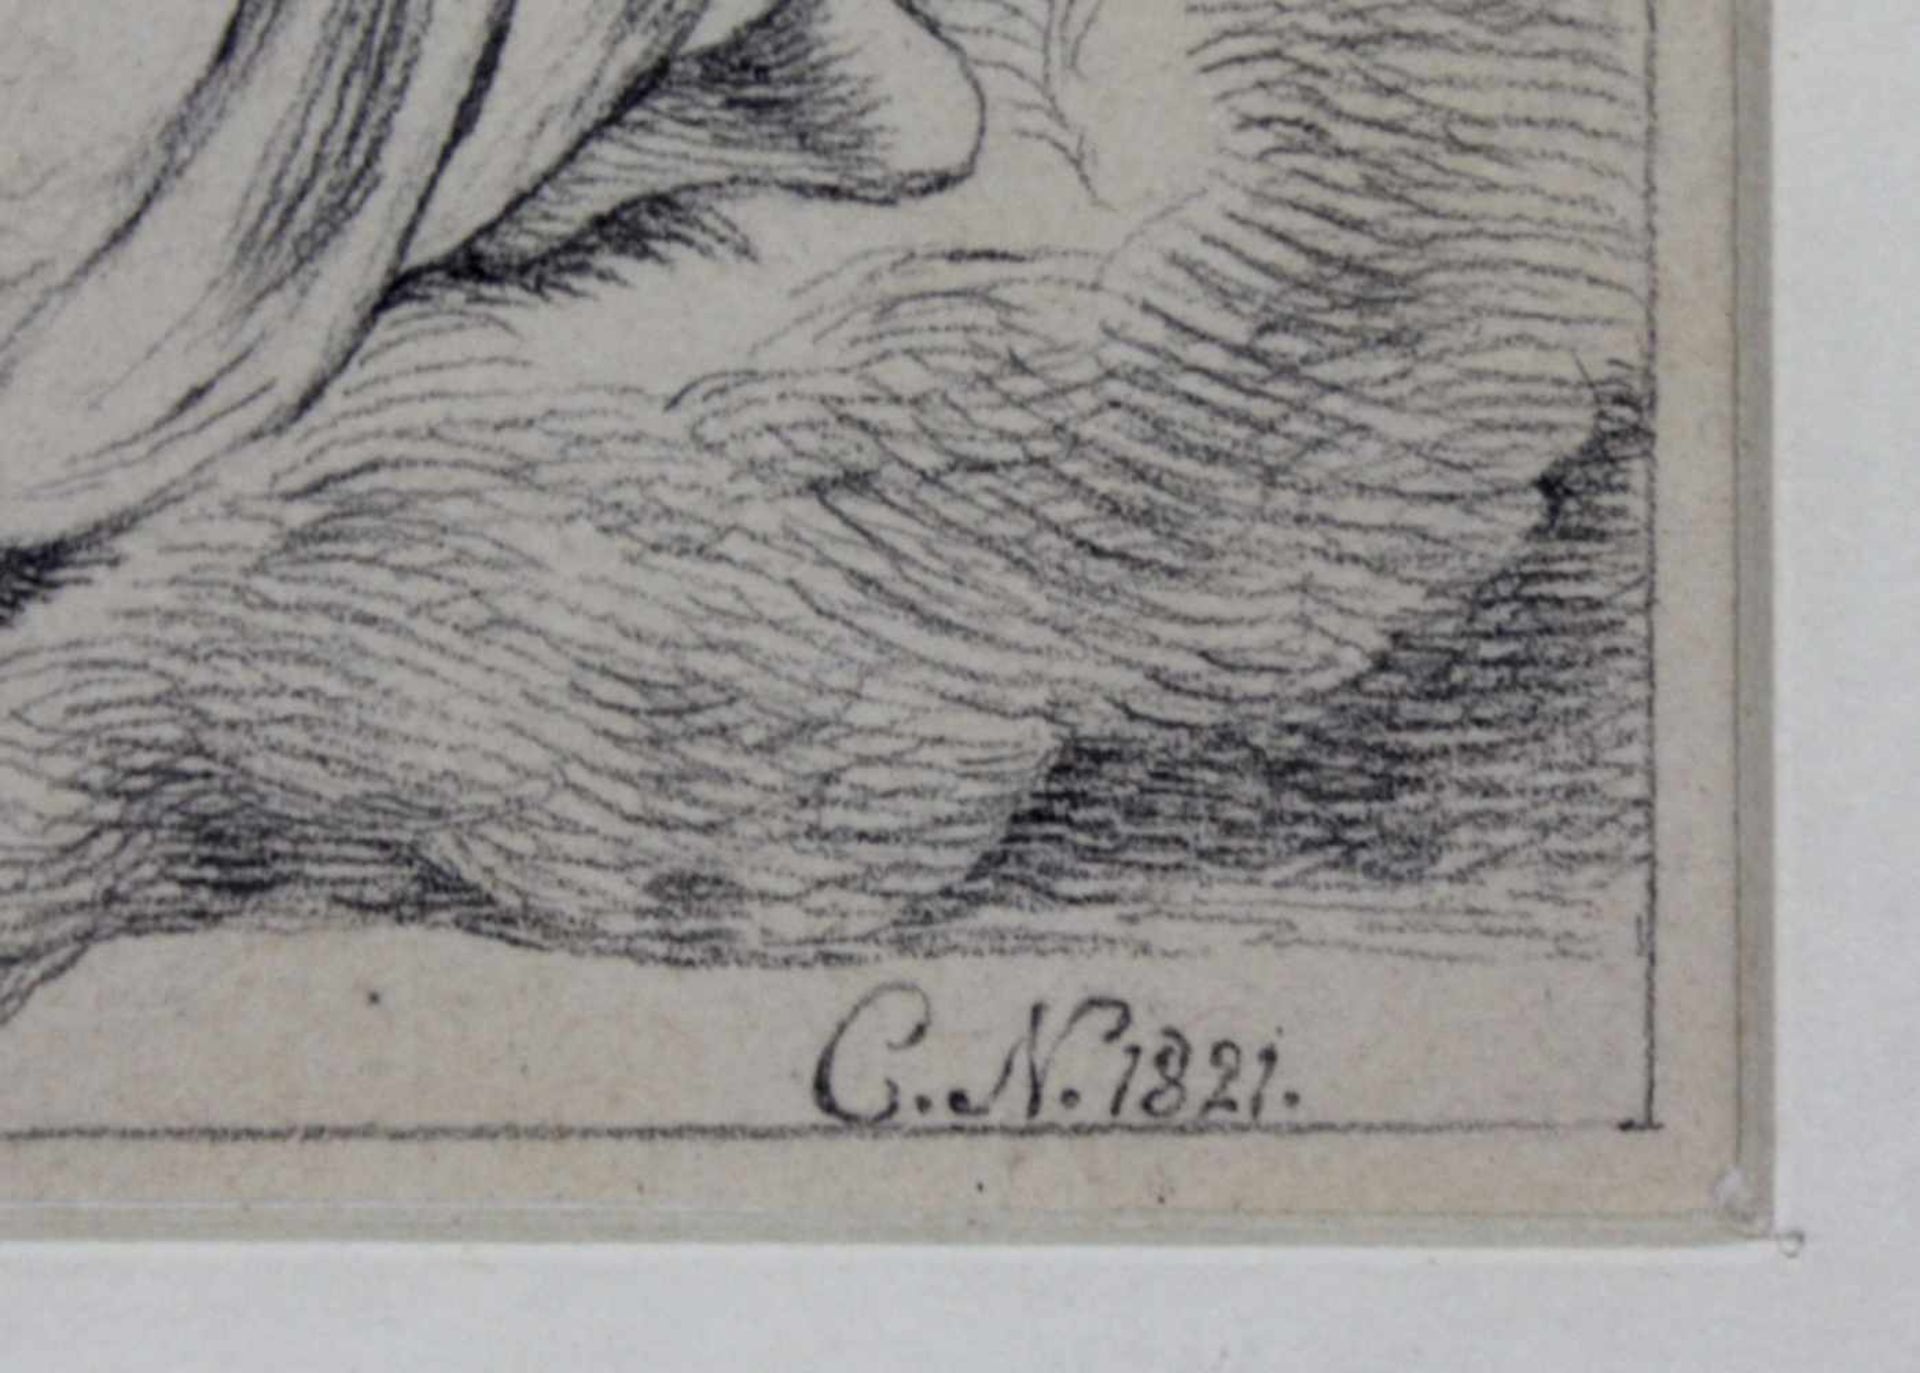 MONOGRAMMIST "C.N." (XIX). Die Göttin Hebe mit Adler und Amor. Datiert 1821. 20 cm x 15 cm. - Image 3 of 4